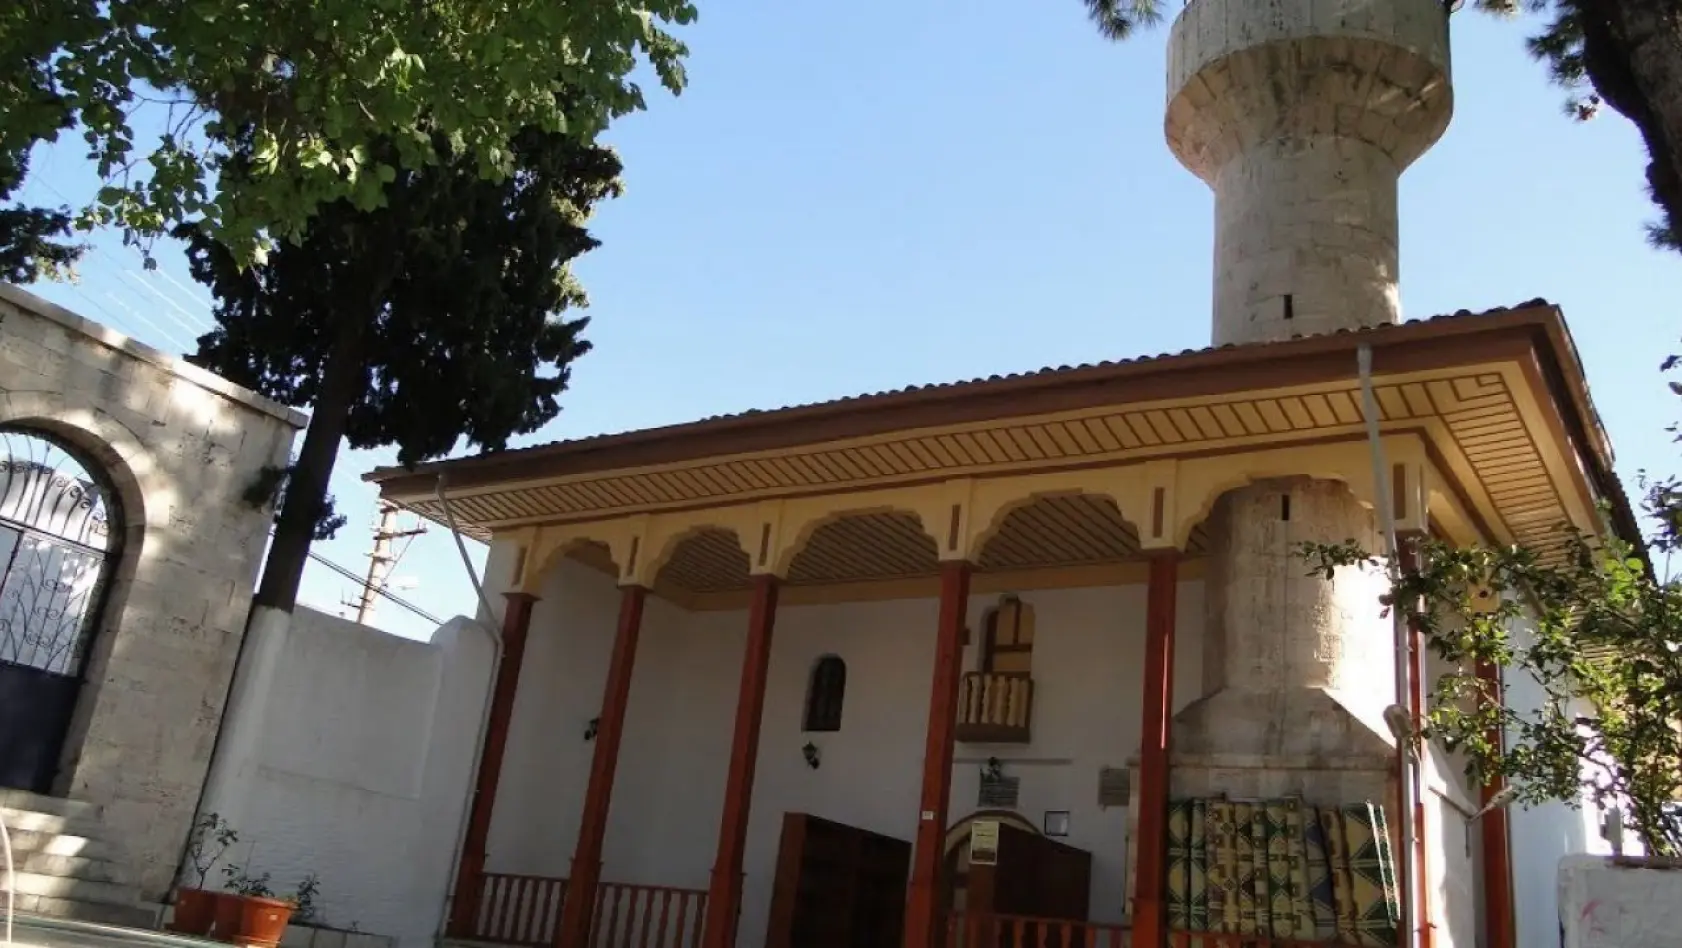 Muğla'nın Menteşe ilçesinde bulunan tarihi camii her yıl ziyaretçi akınına uğruyor